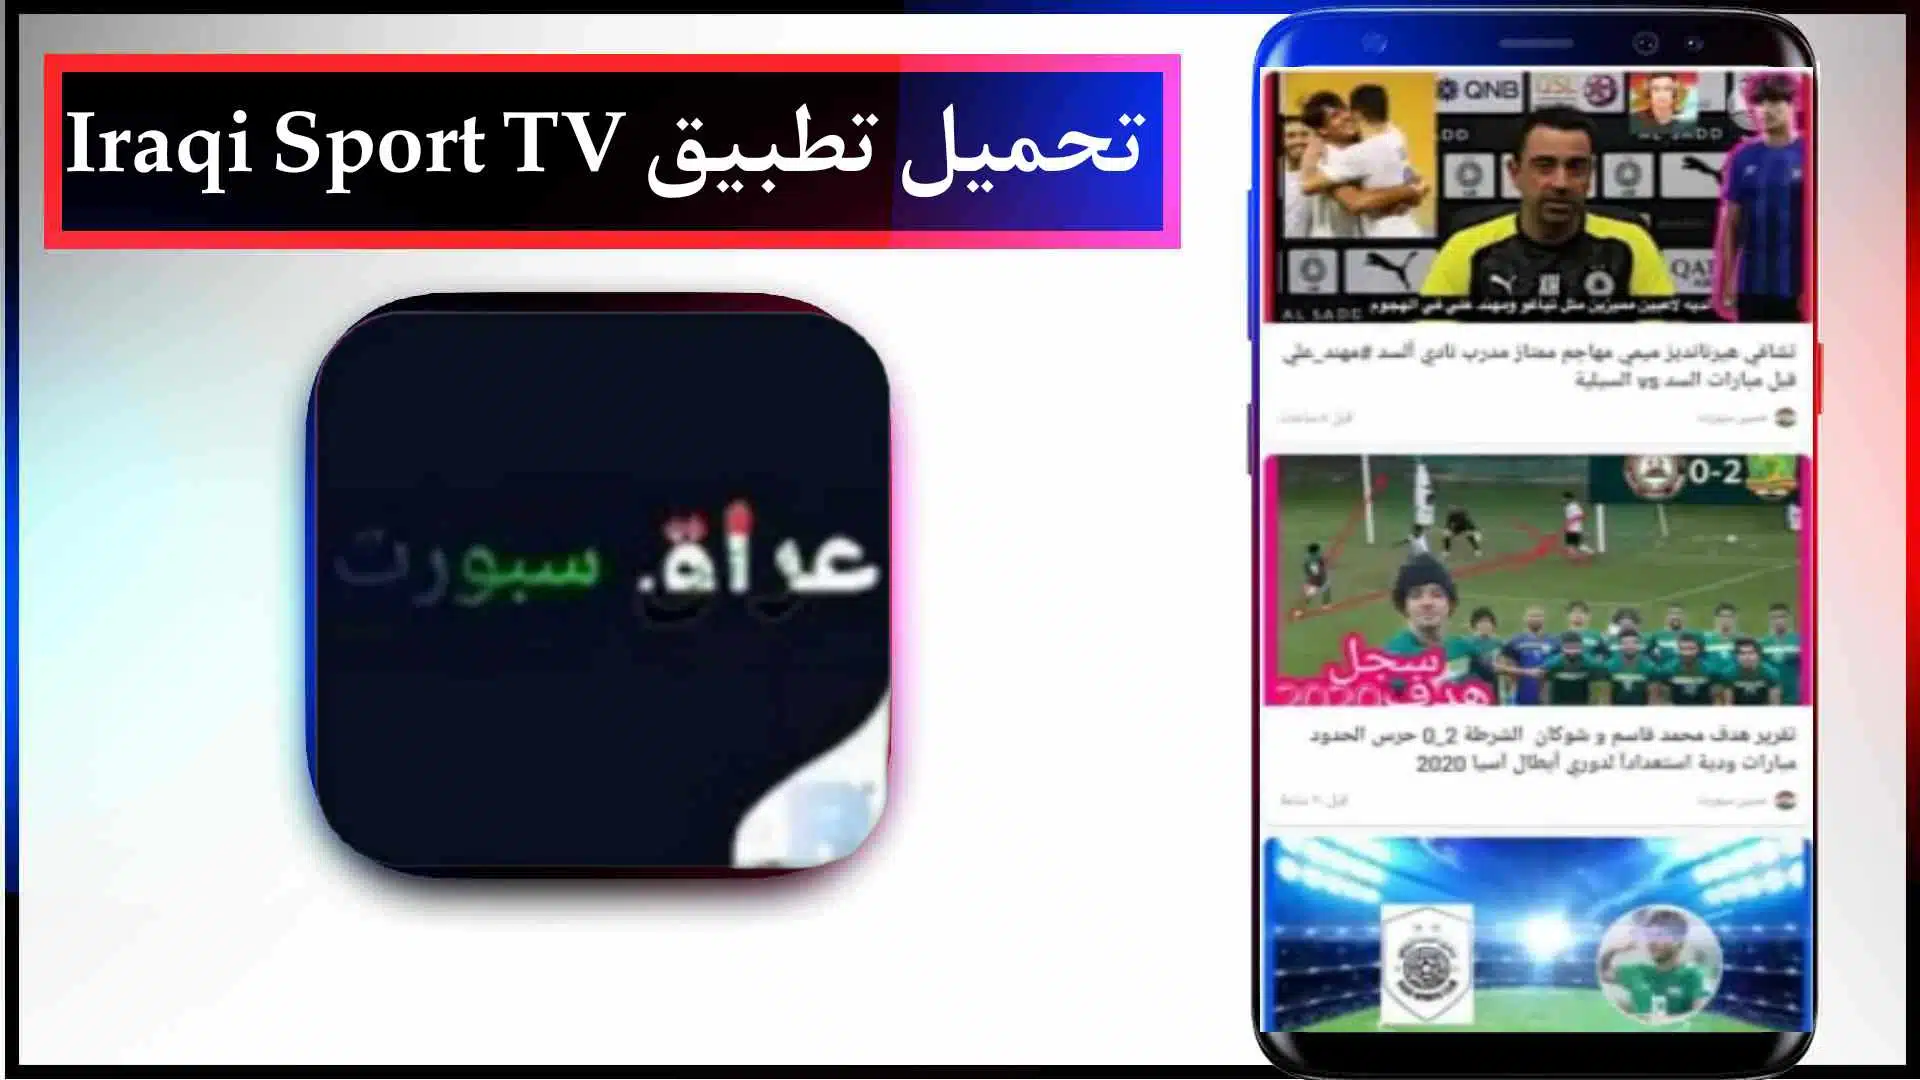 تحميل تطبيق عراق سبورت تي في Iraqi Sport TV لمشاهدة المباريات اخر اصدار 2023